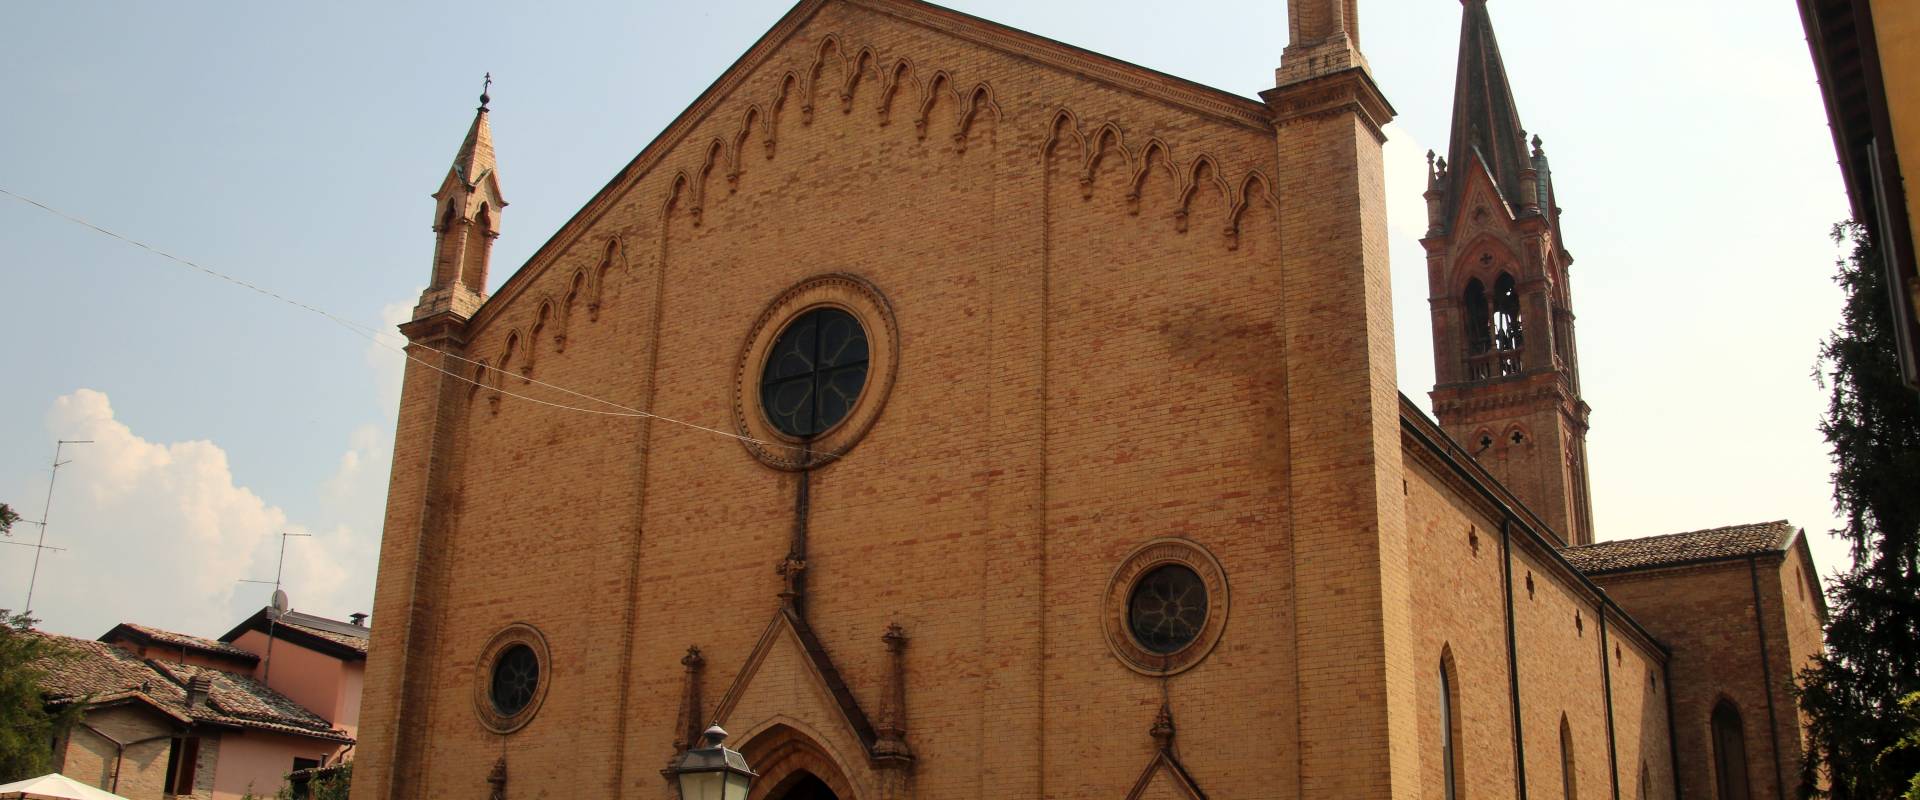 Chiesa dei Santi Senesio e Teopompo (Castelvetro di Modena) 05 foto di Mongolo1984